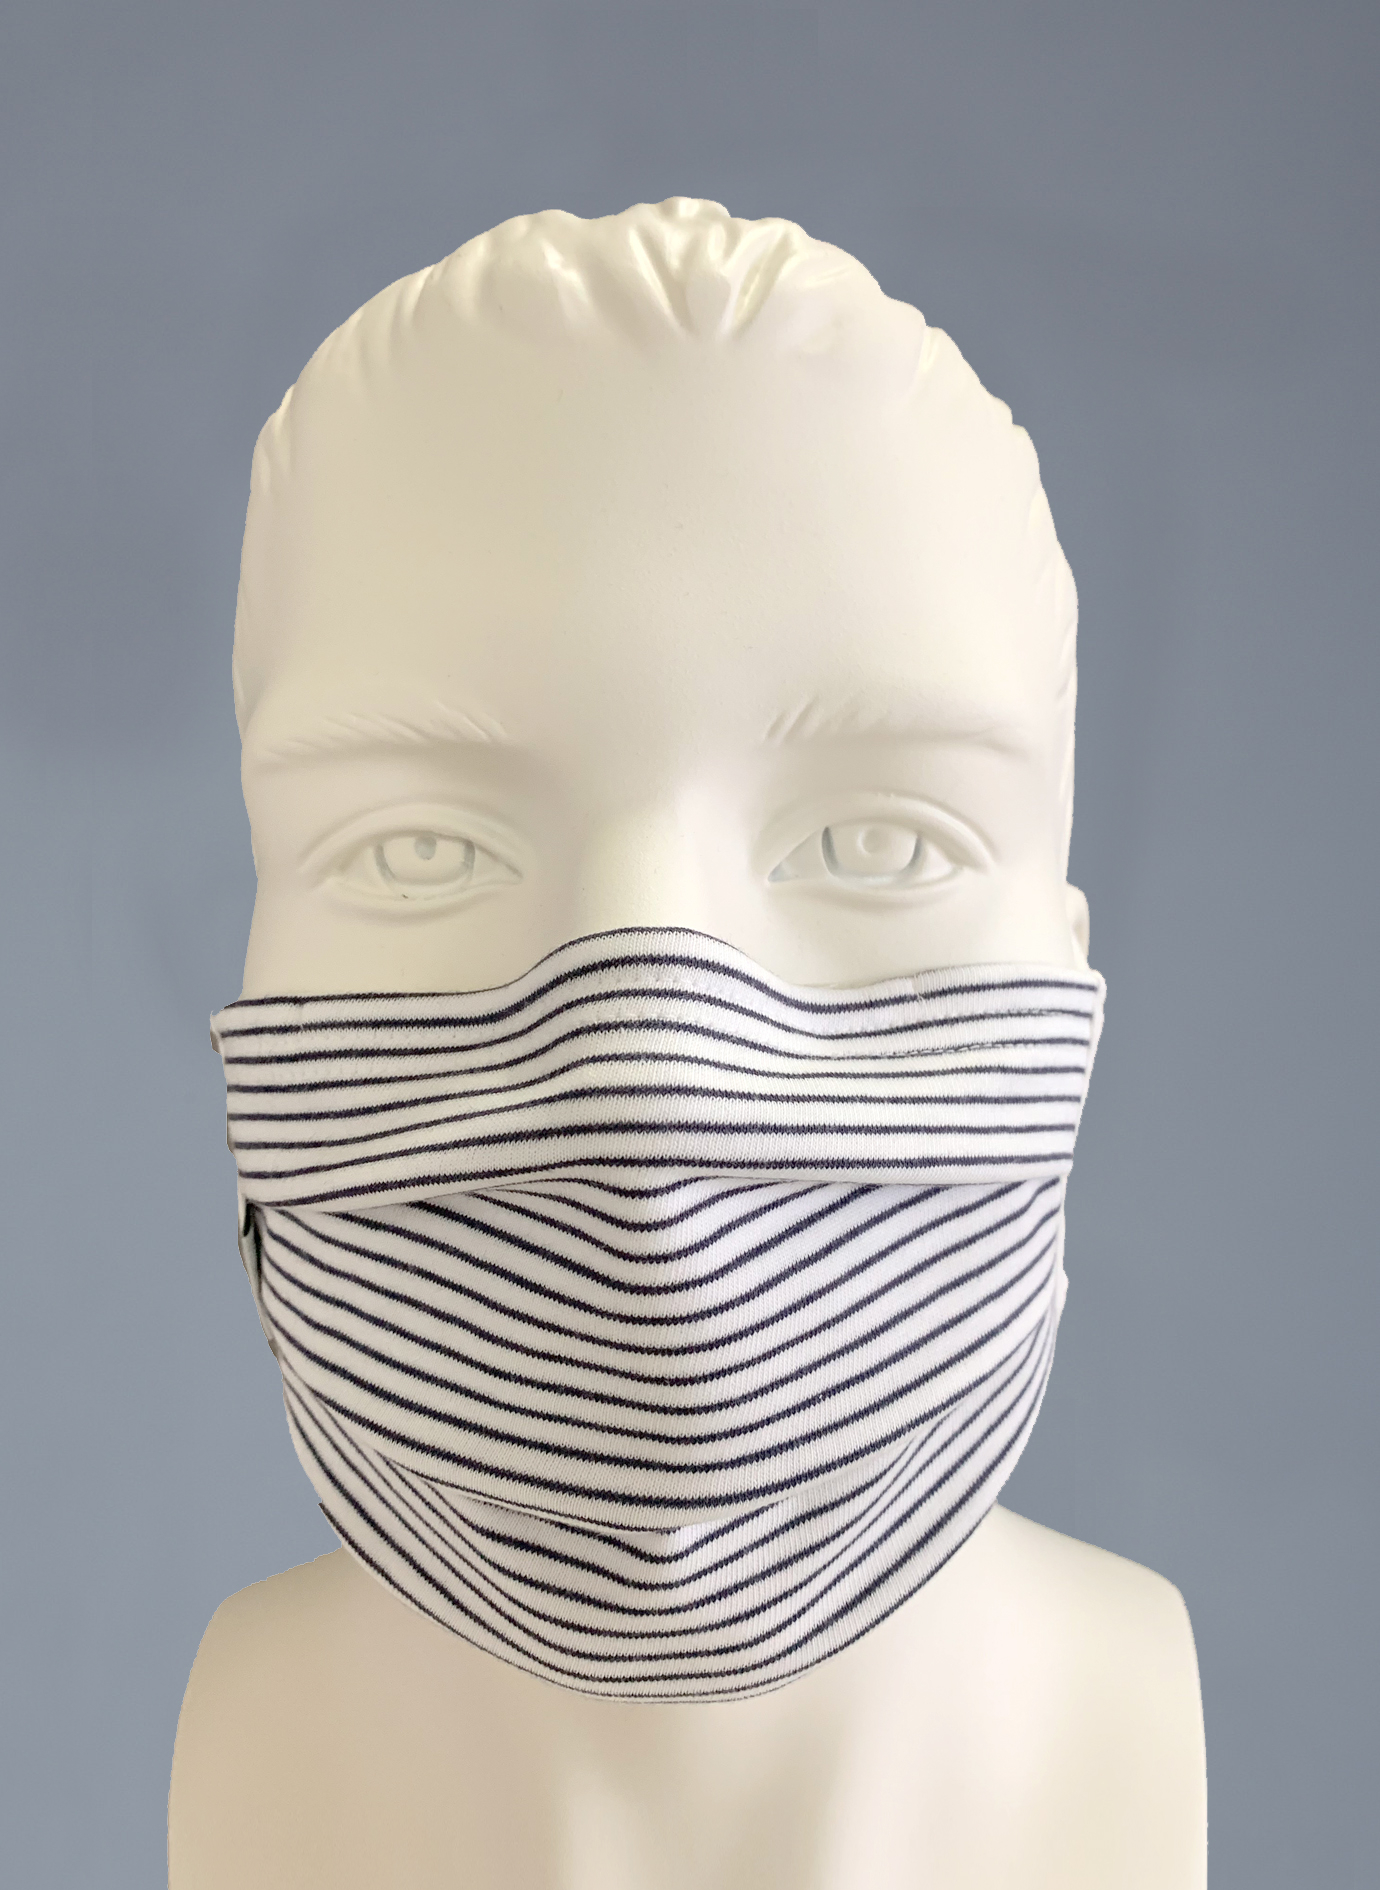  Wiederverwendbare Mund-Nasen-Maske Erwachsene Doppelpack Anthrazit Ringel